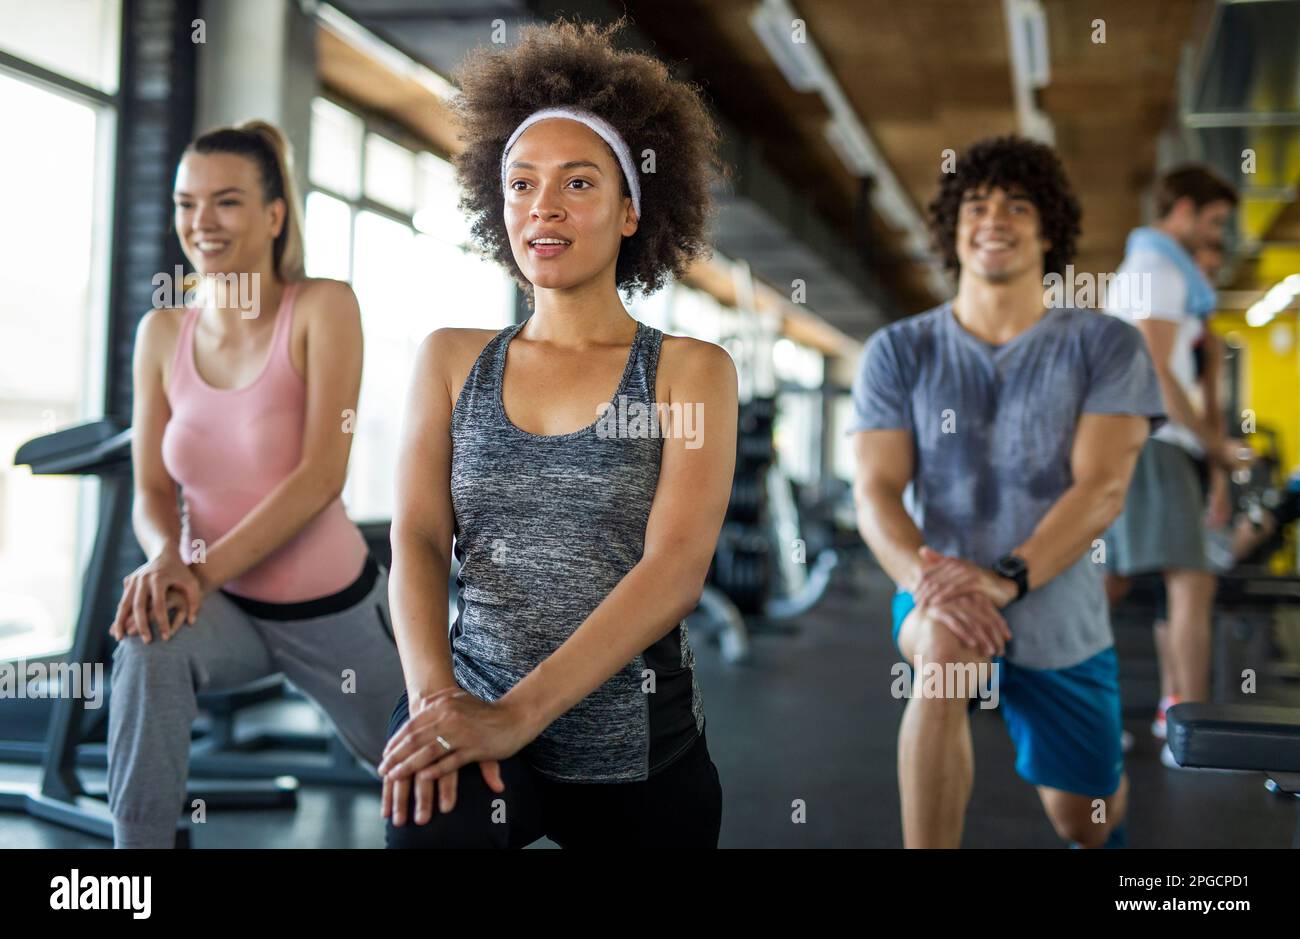 Groupe de jeunes, amis souriant et profiter du sport dans la salle de gym. Concept d'exercice, d'entraînement. Banque D'Images